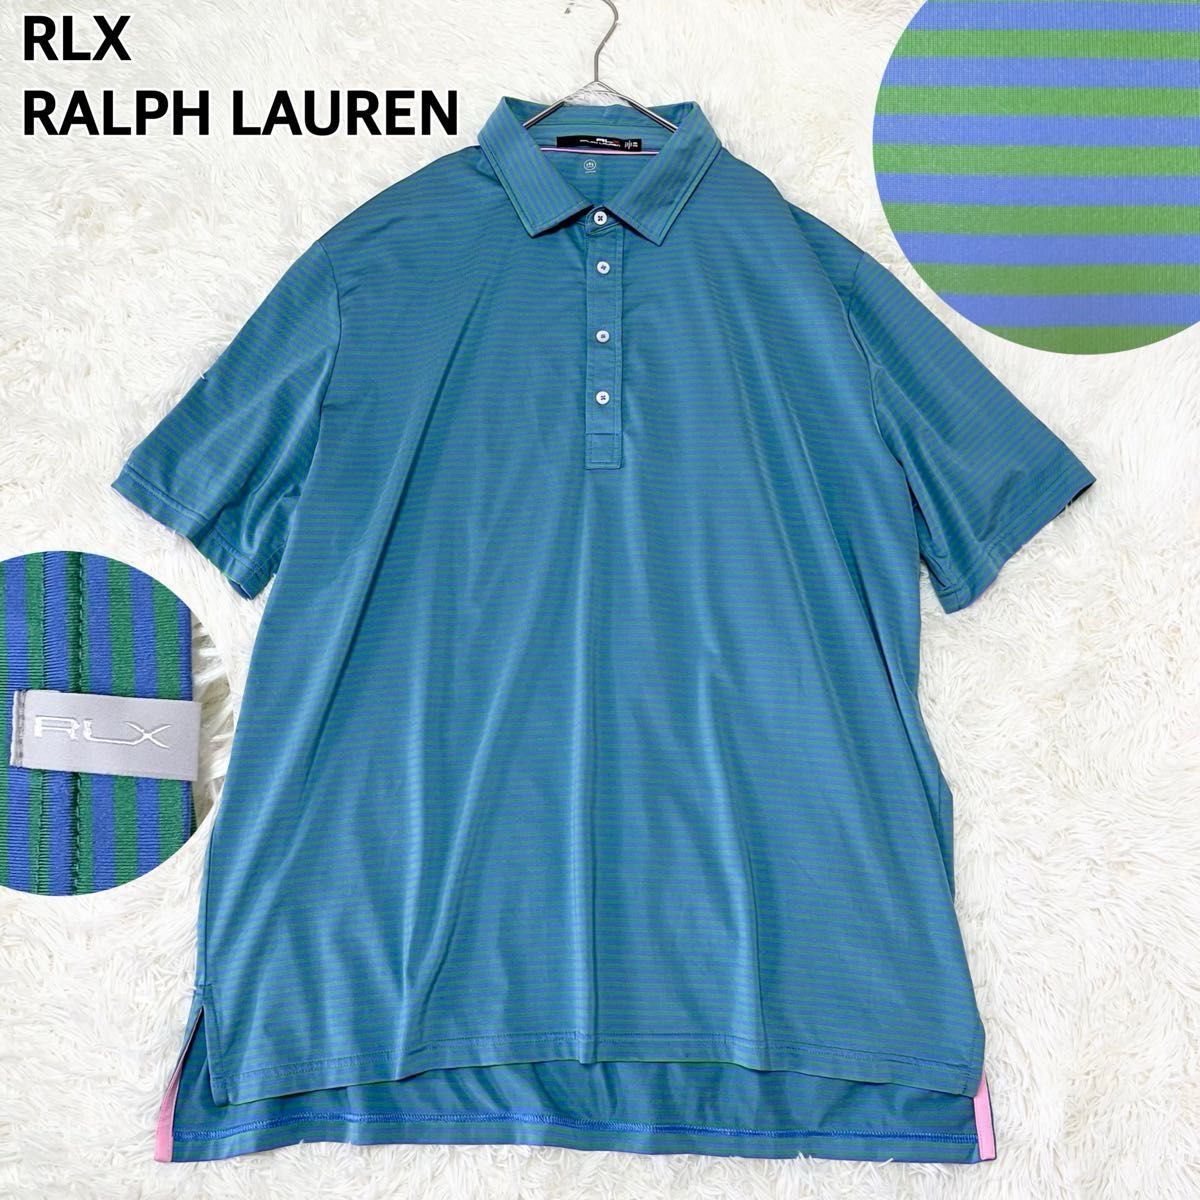 RLX ラルフローレン ボーダーポロシャツ 青 メンズ 大きいサイズ XXL